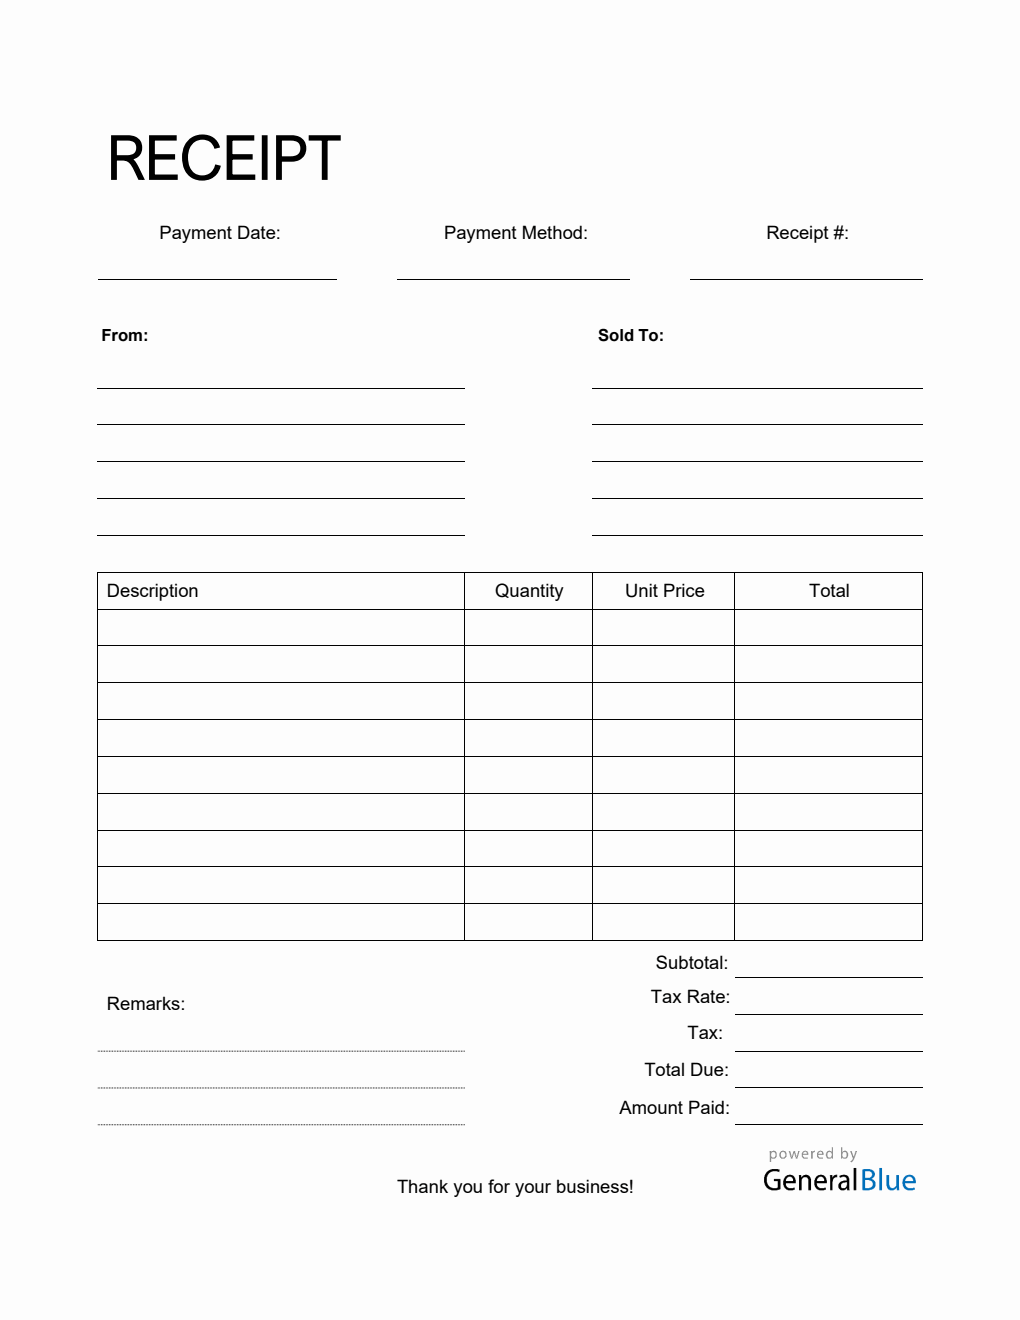 Blank Receipt Template in PDF (Simple)